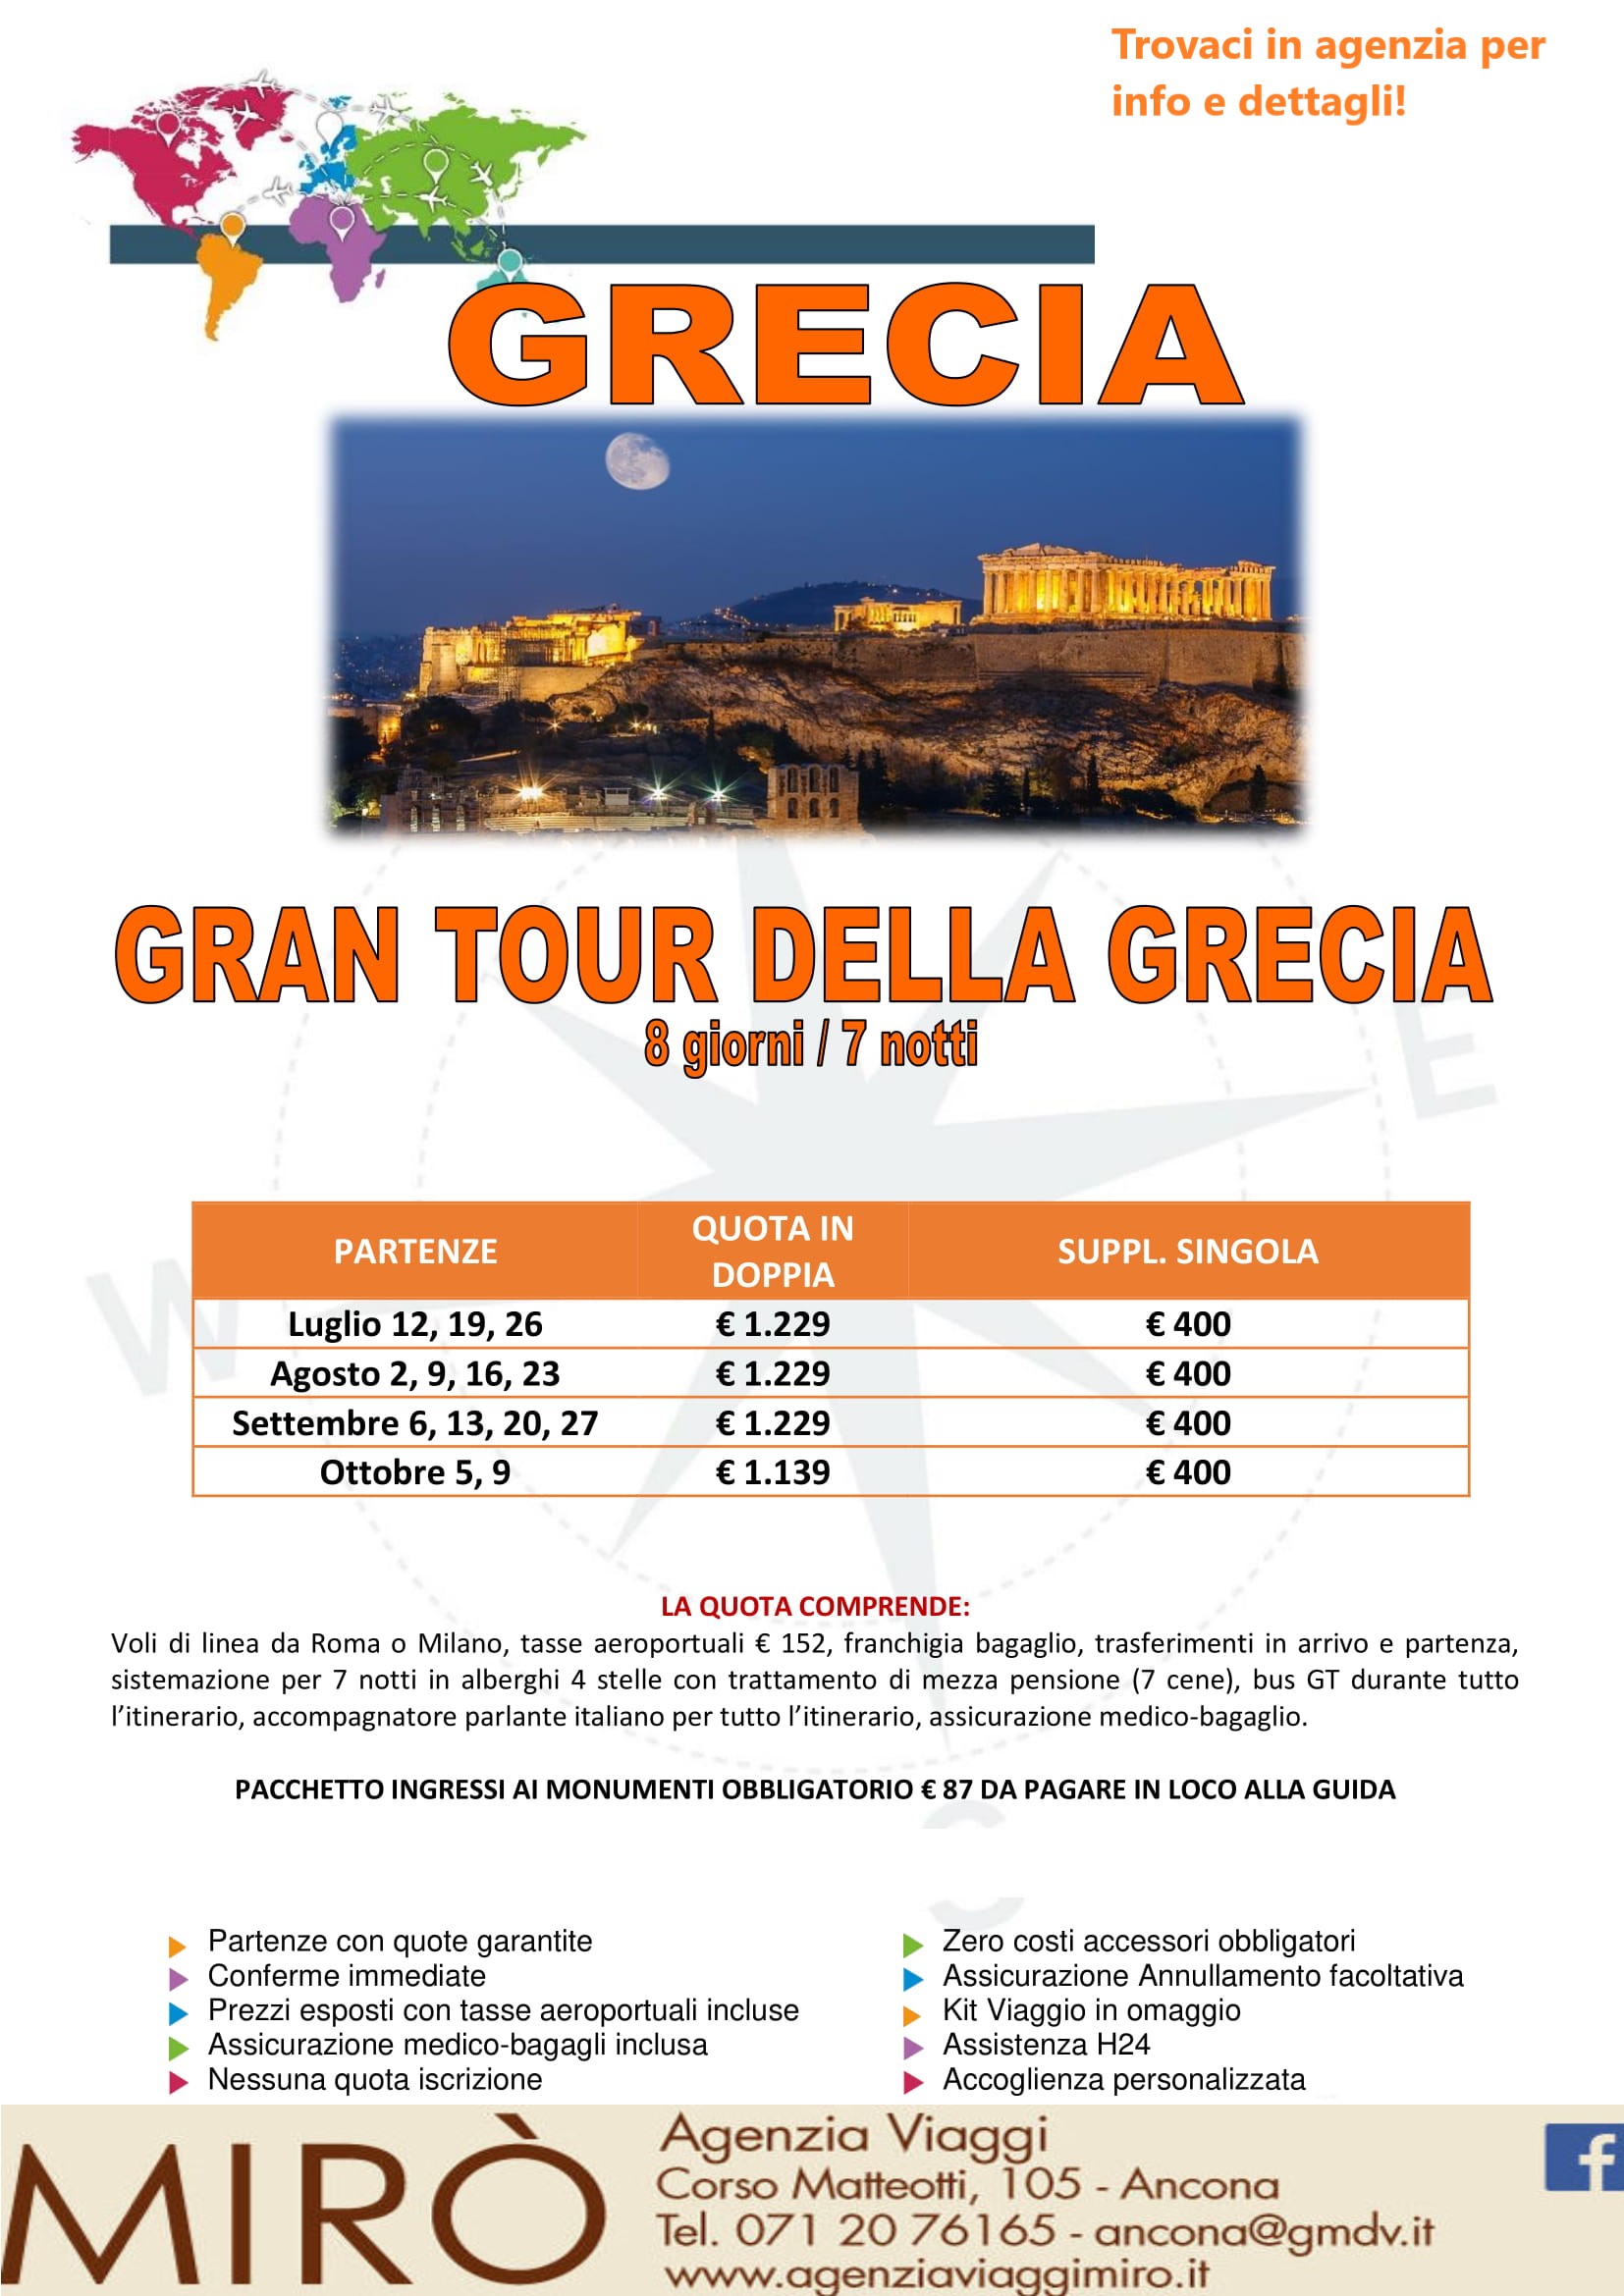 Agenzia-viaggi-Grecia-Atene